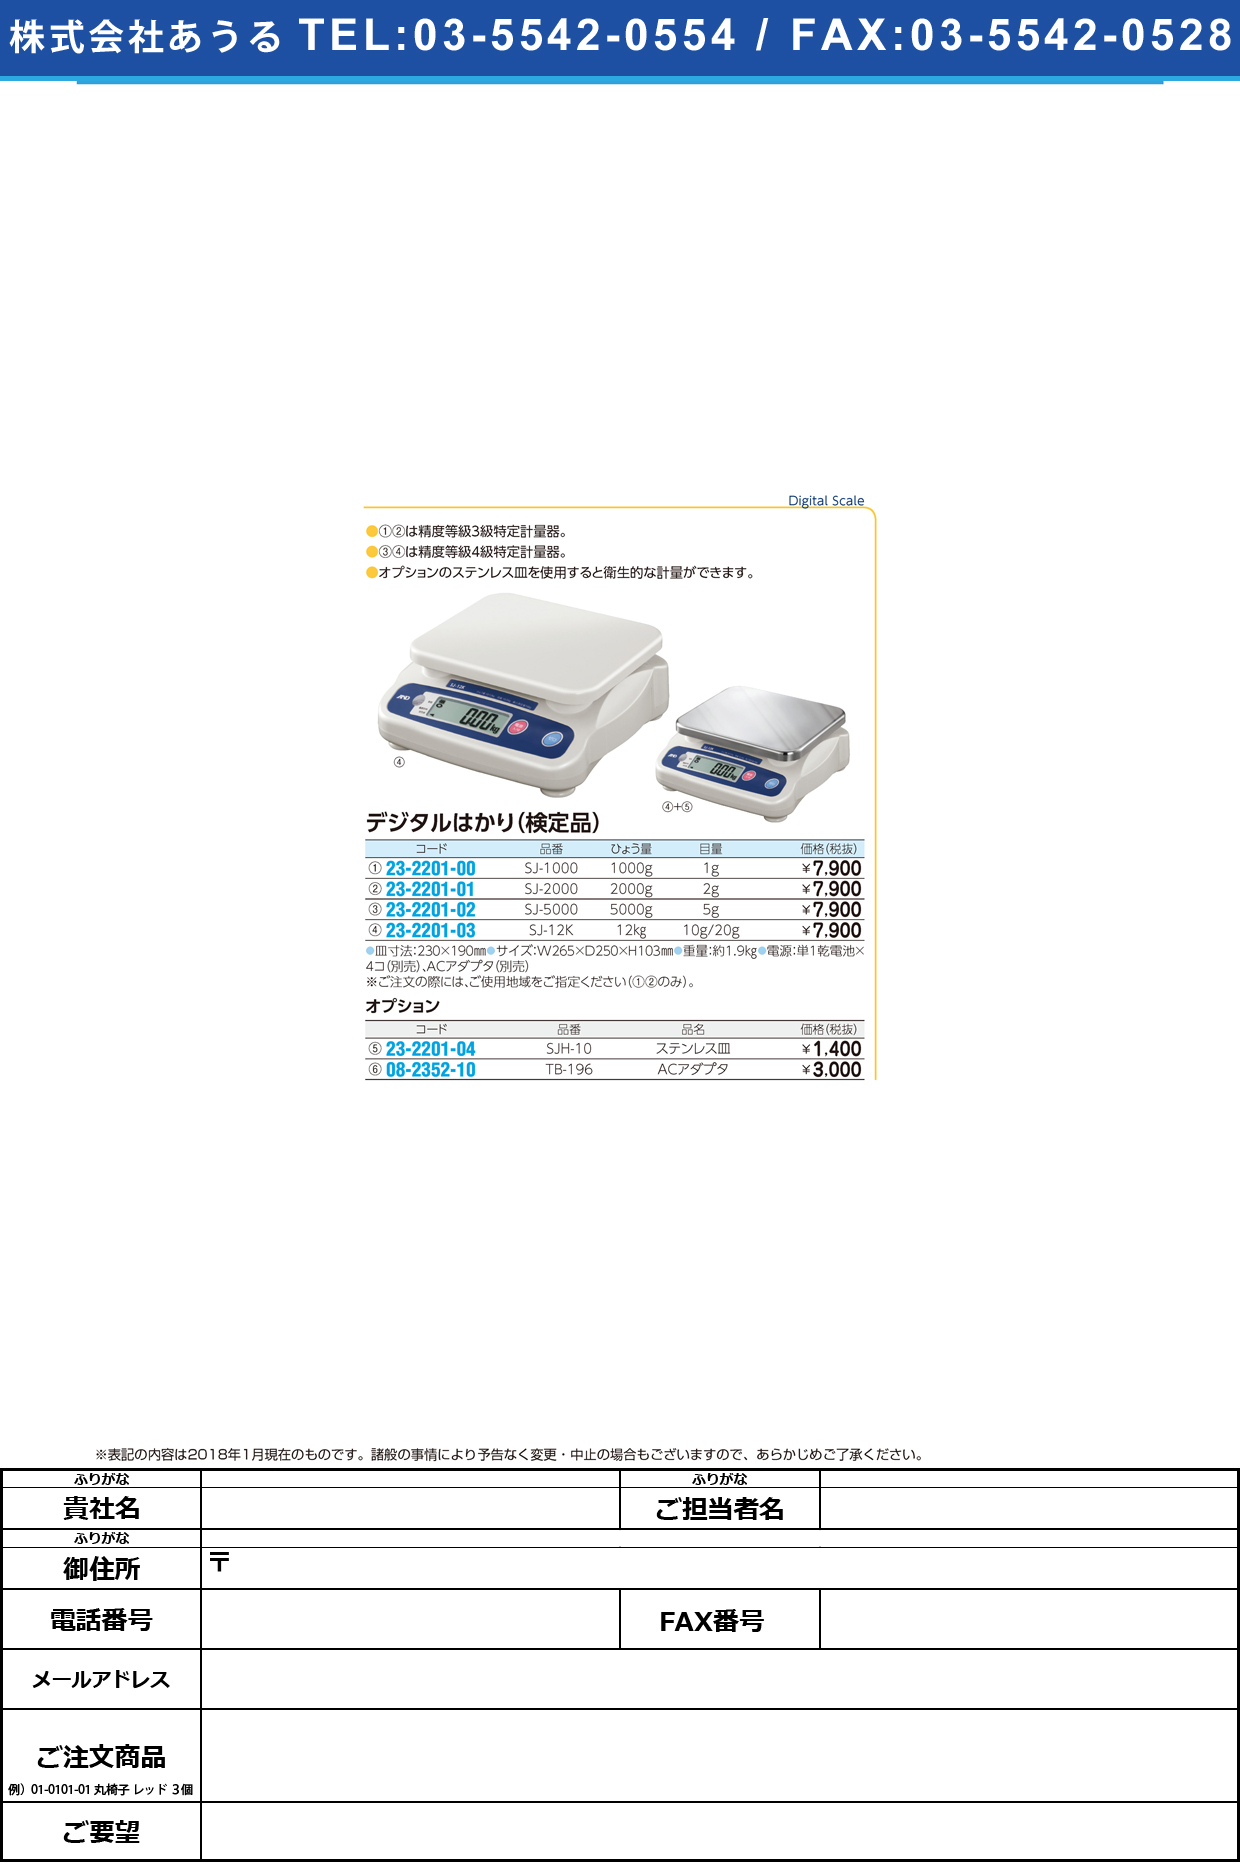 (23-2201-04)デジタルはかり専用ステンレス皿 SJH-10 ﾃﾞｼﾞﾀﾙﾊｶﾘｾﾝﾖｳｽﾃﾝﾚｽｻﾞ【1枚単位】【2018年カタログ商品】